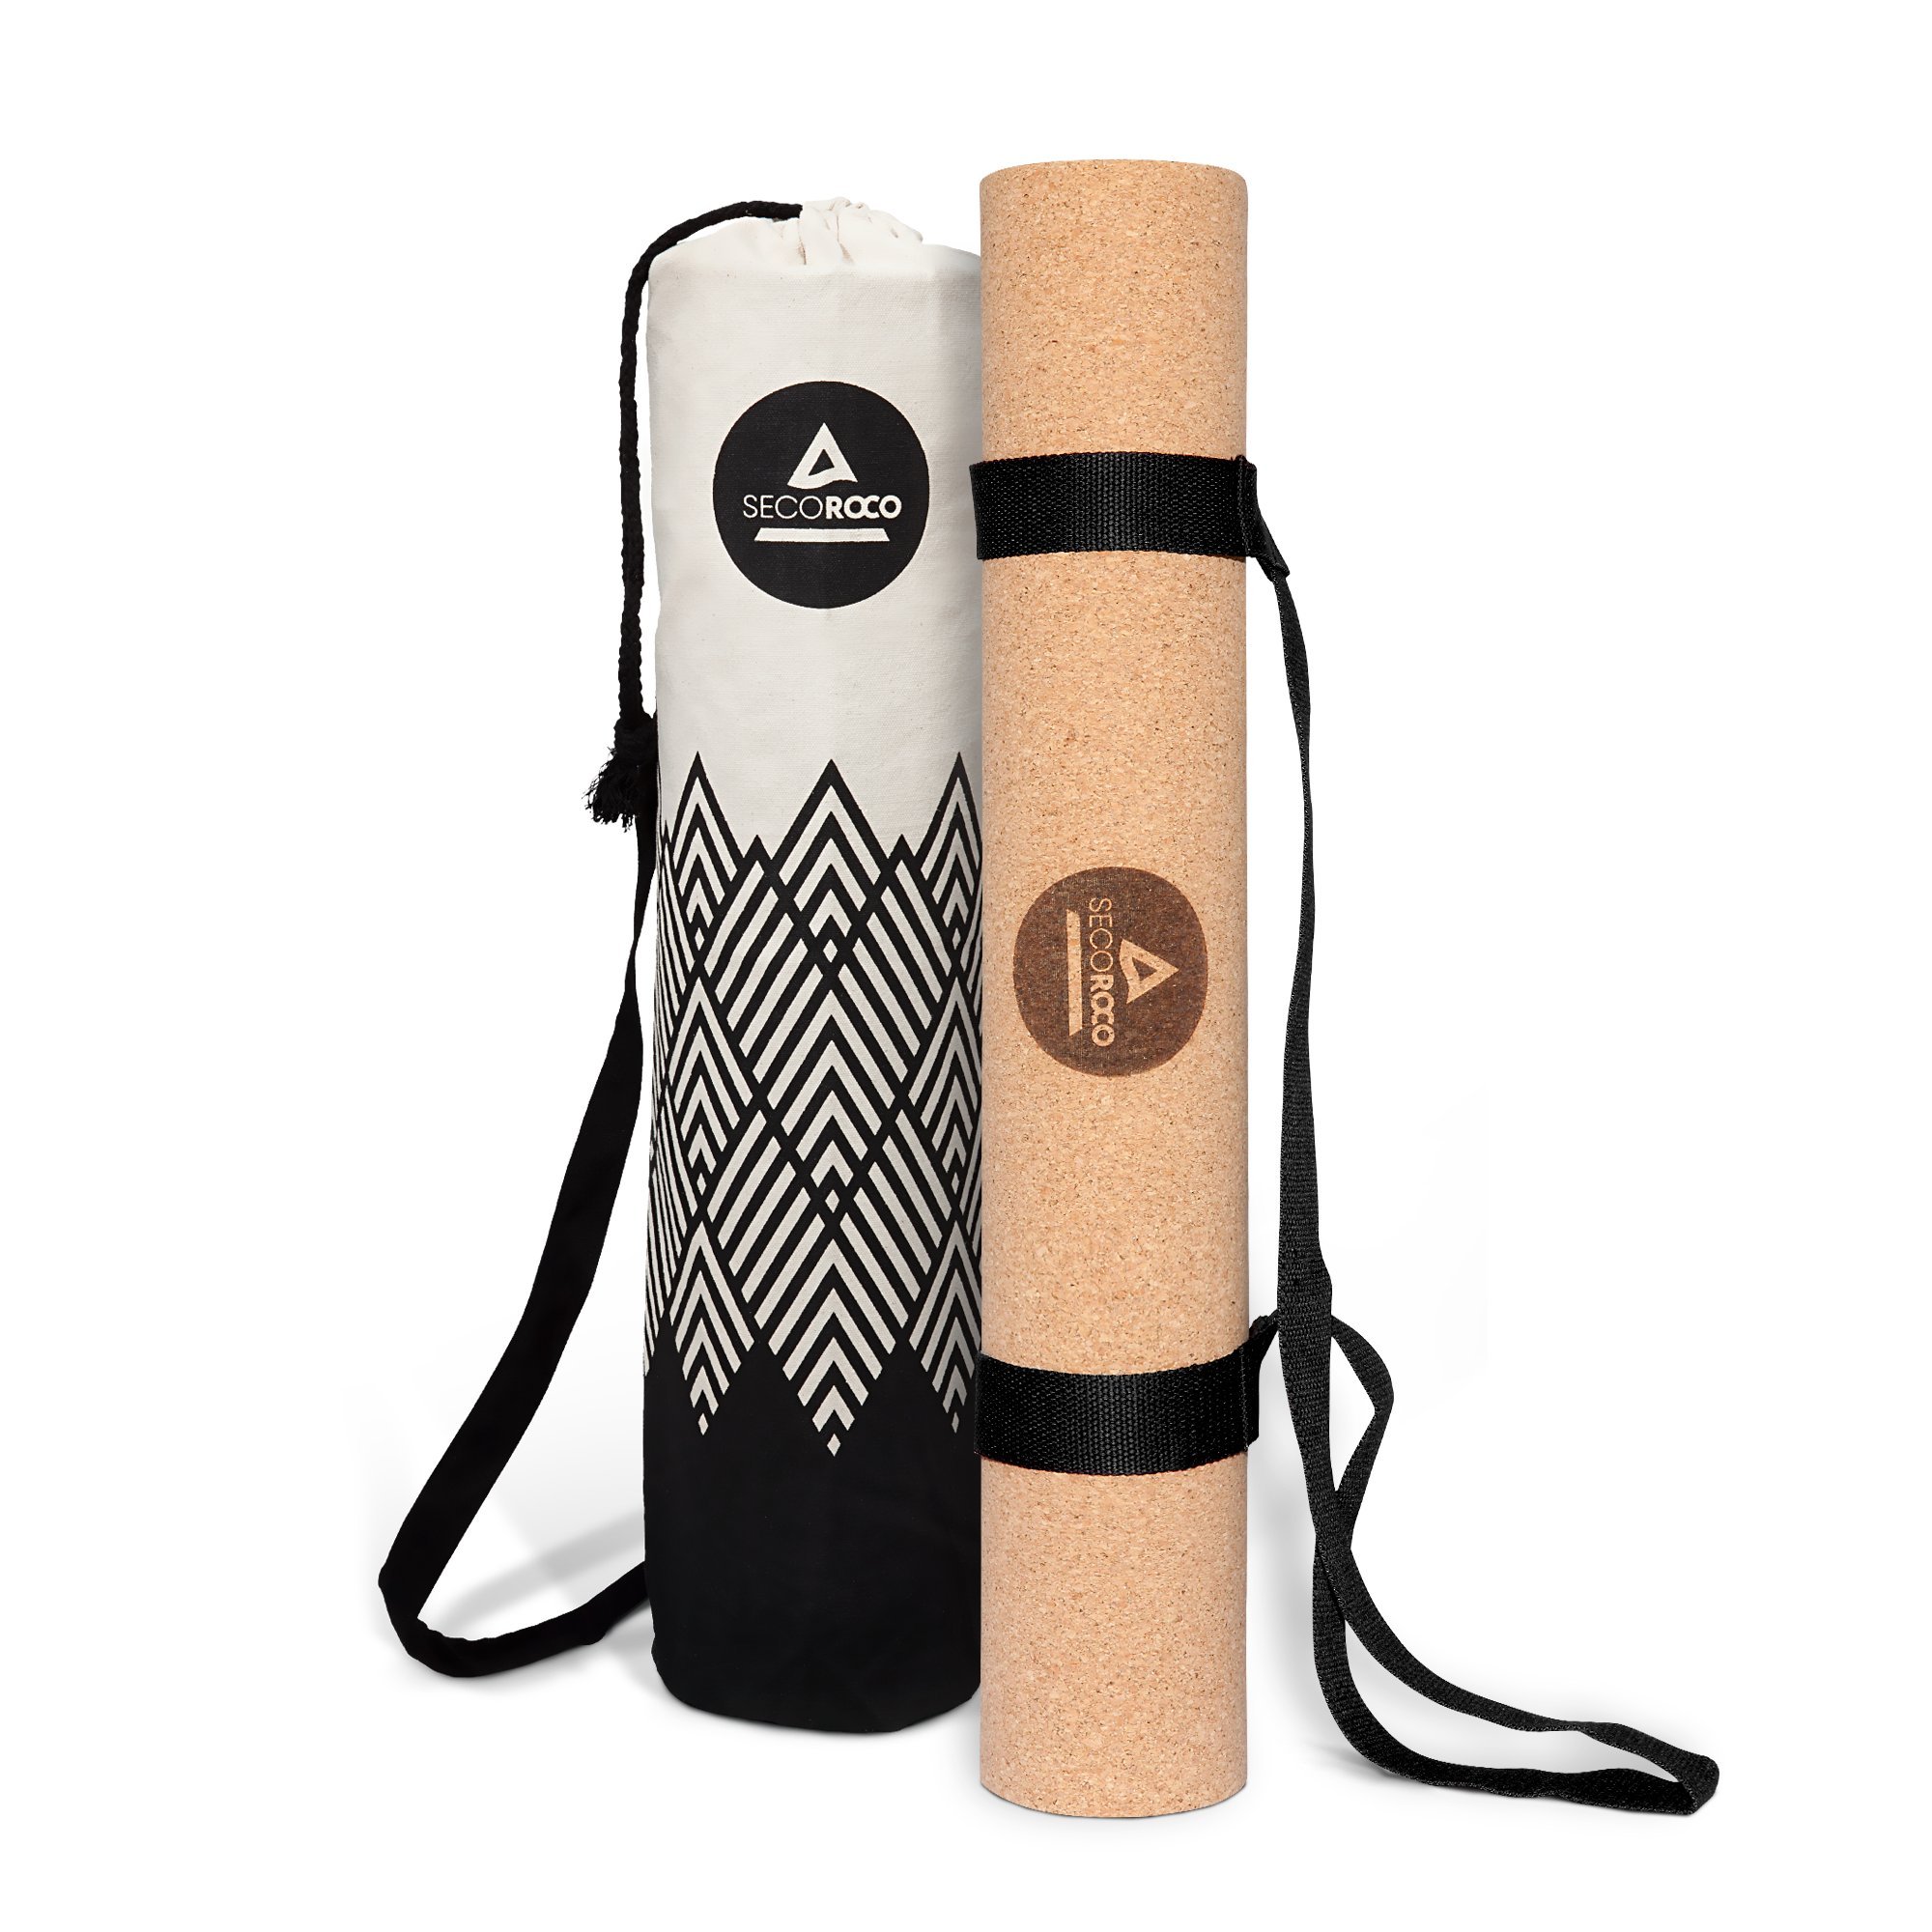 Yogamatte Kork - getestet mit SEHR GUT - 2 mm Stärke - rutschfest, vegan & nachhaltig - Yoga Matte aus Kork & Kautschuk inklusive Yogatasche